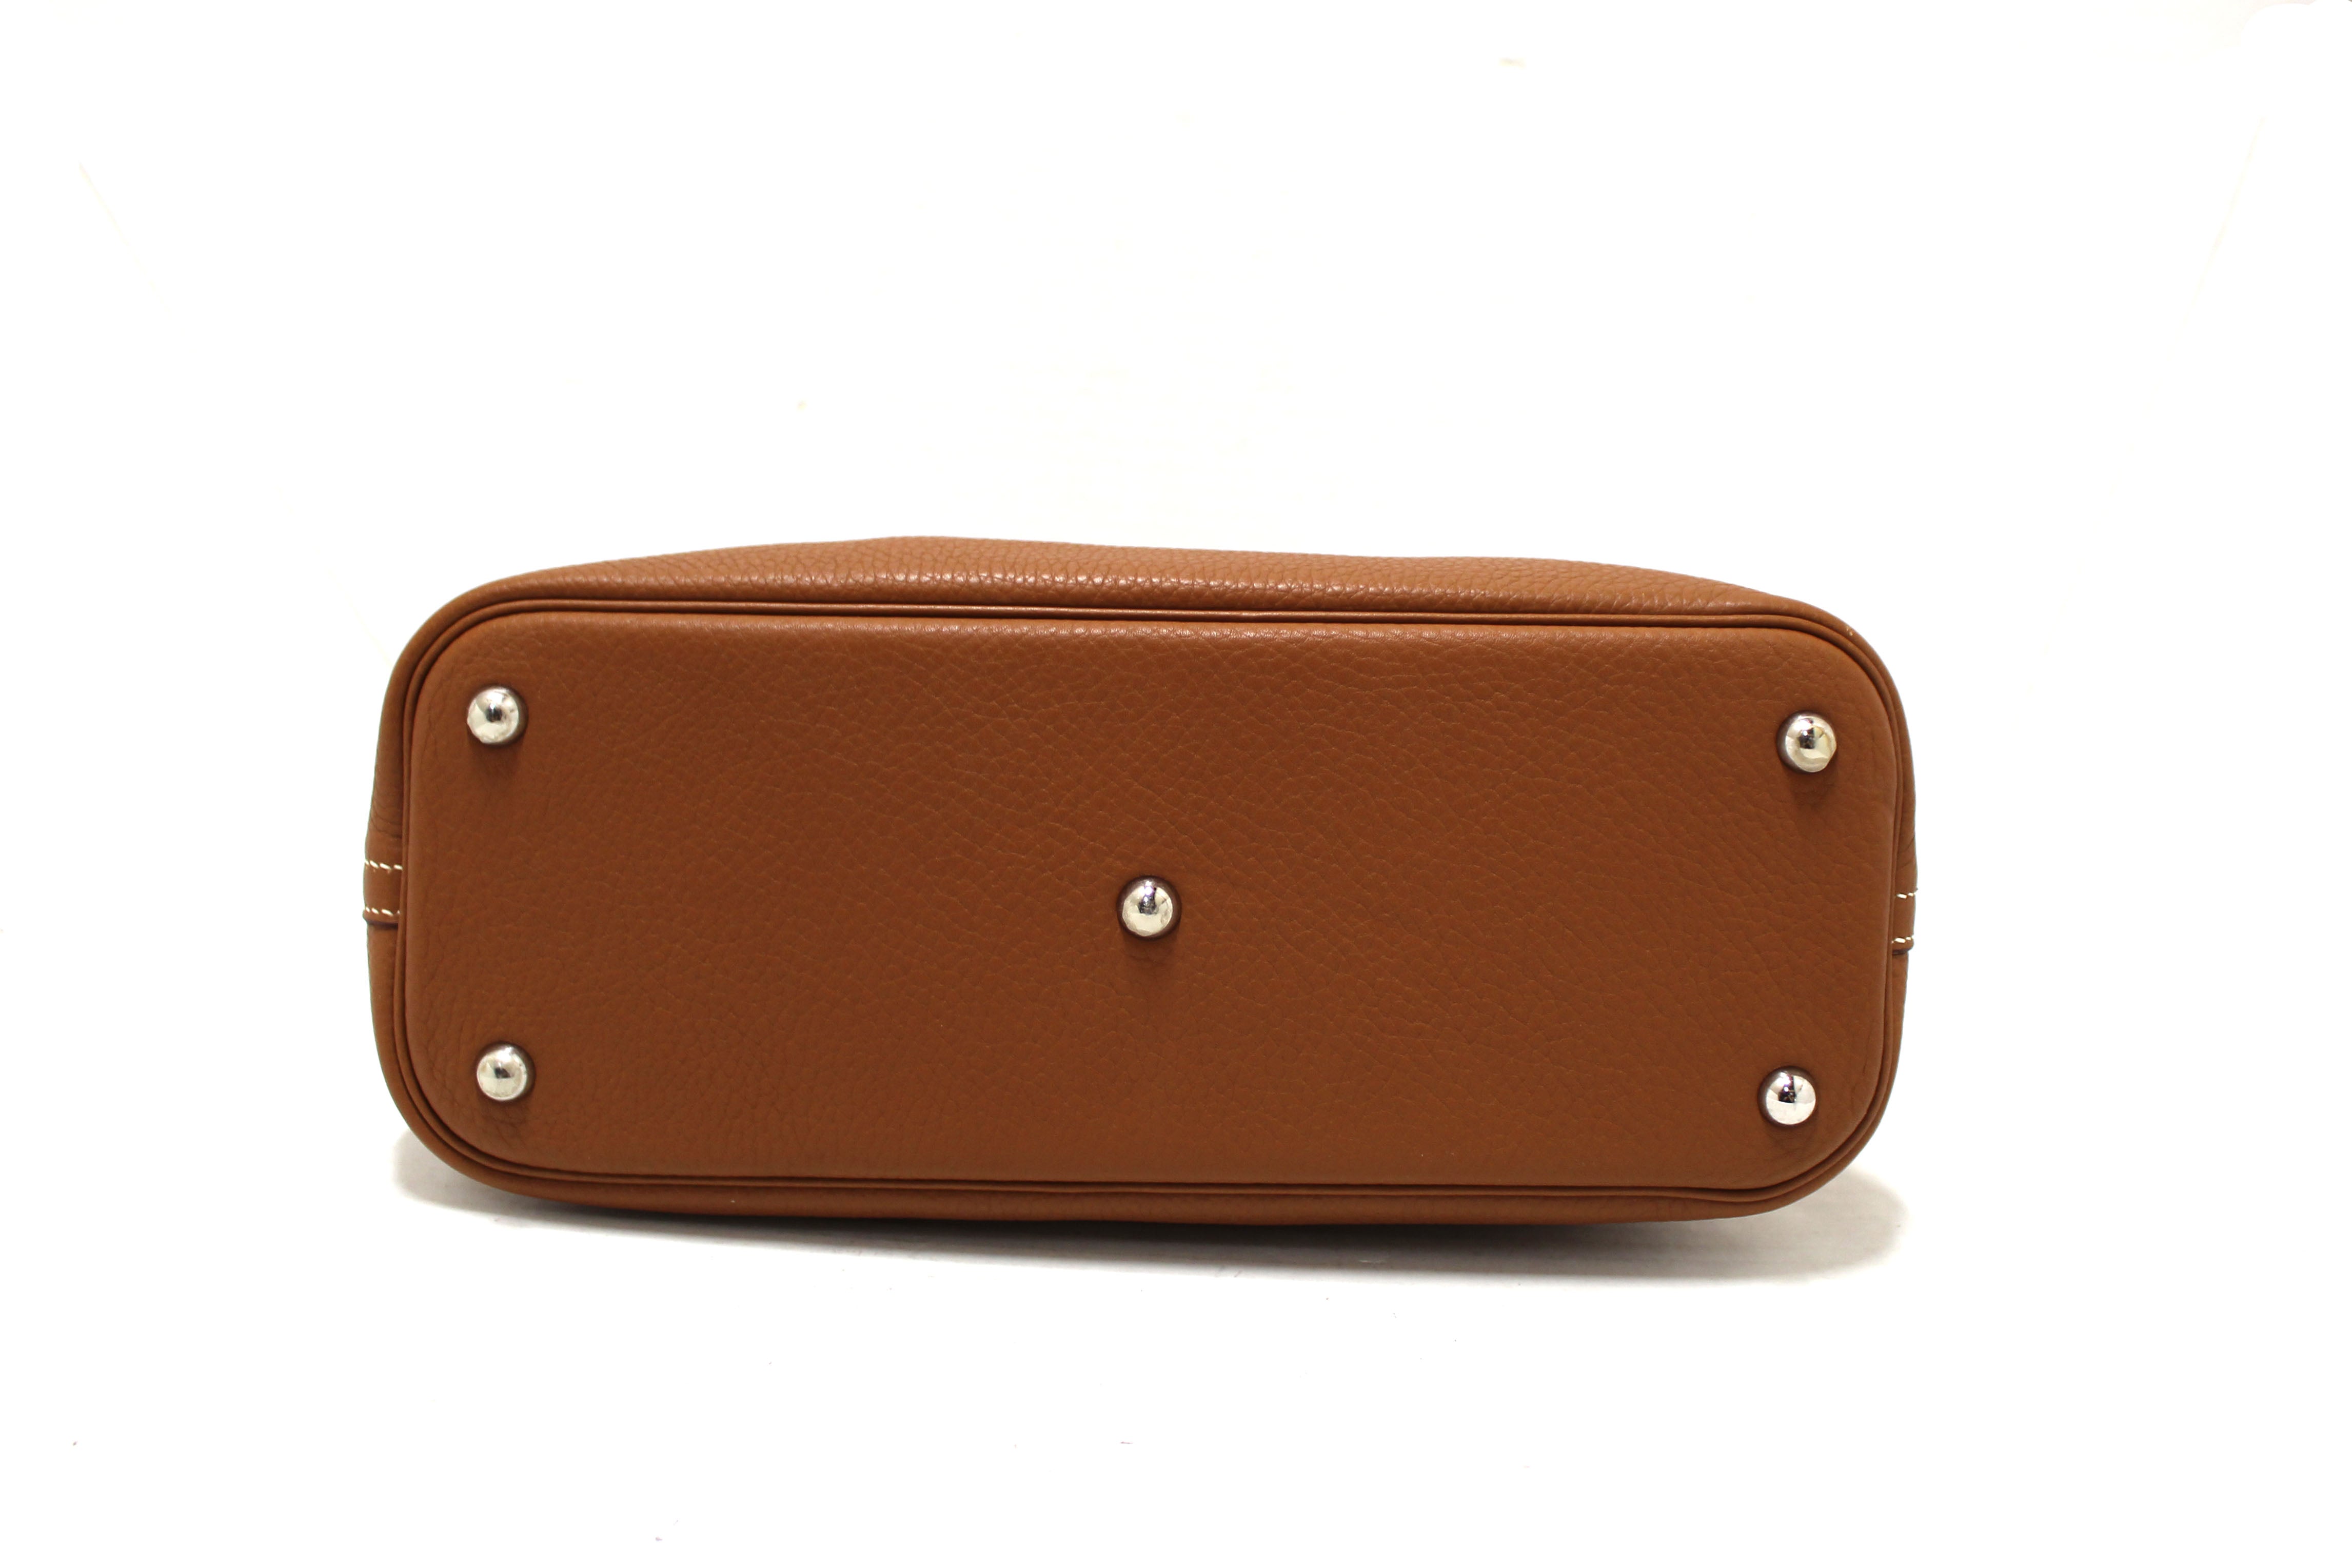 Authentic Hermes Brown Taurillon Clemence Bolide 31 Handbag/Shoulder Bag